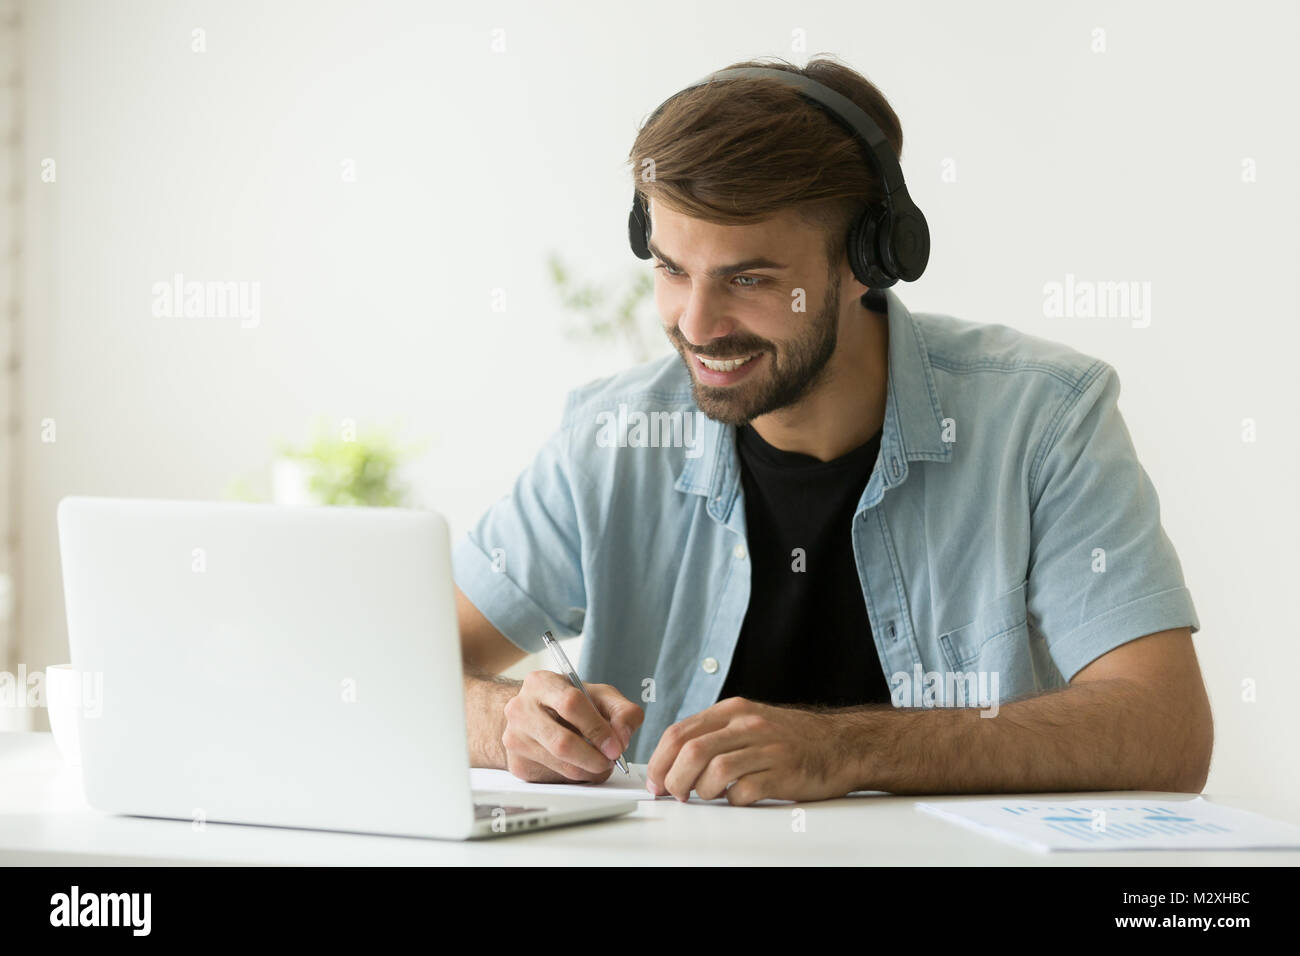 Smiling man wearing headphones à faire écran à l'ordinateur Banque D'Images